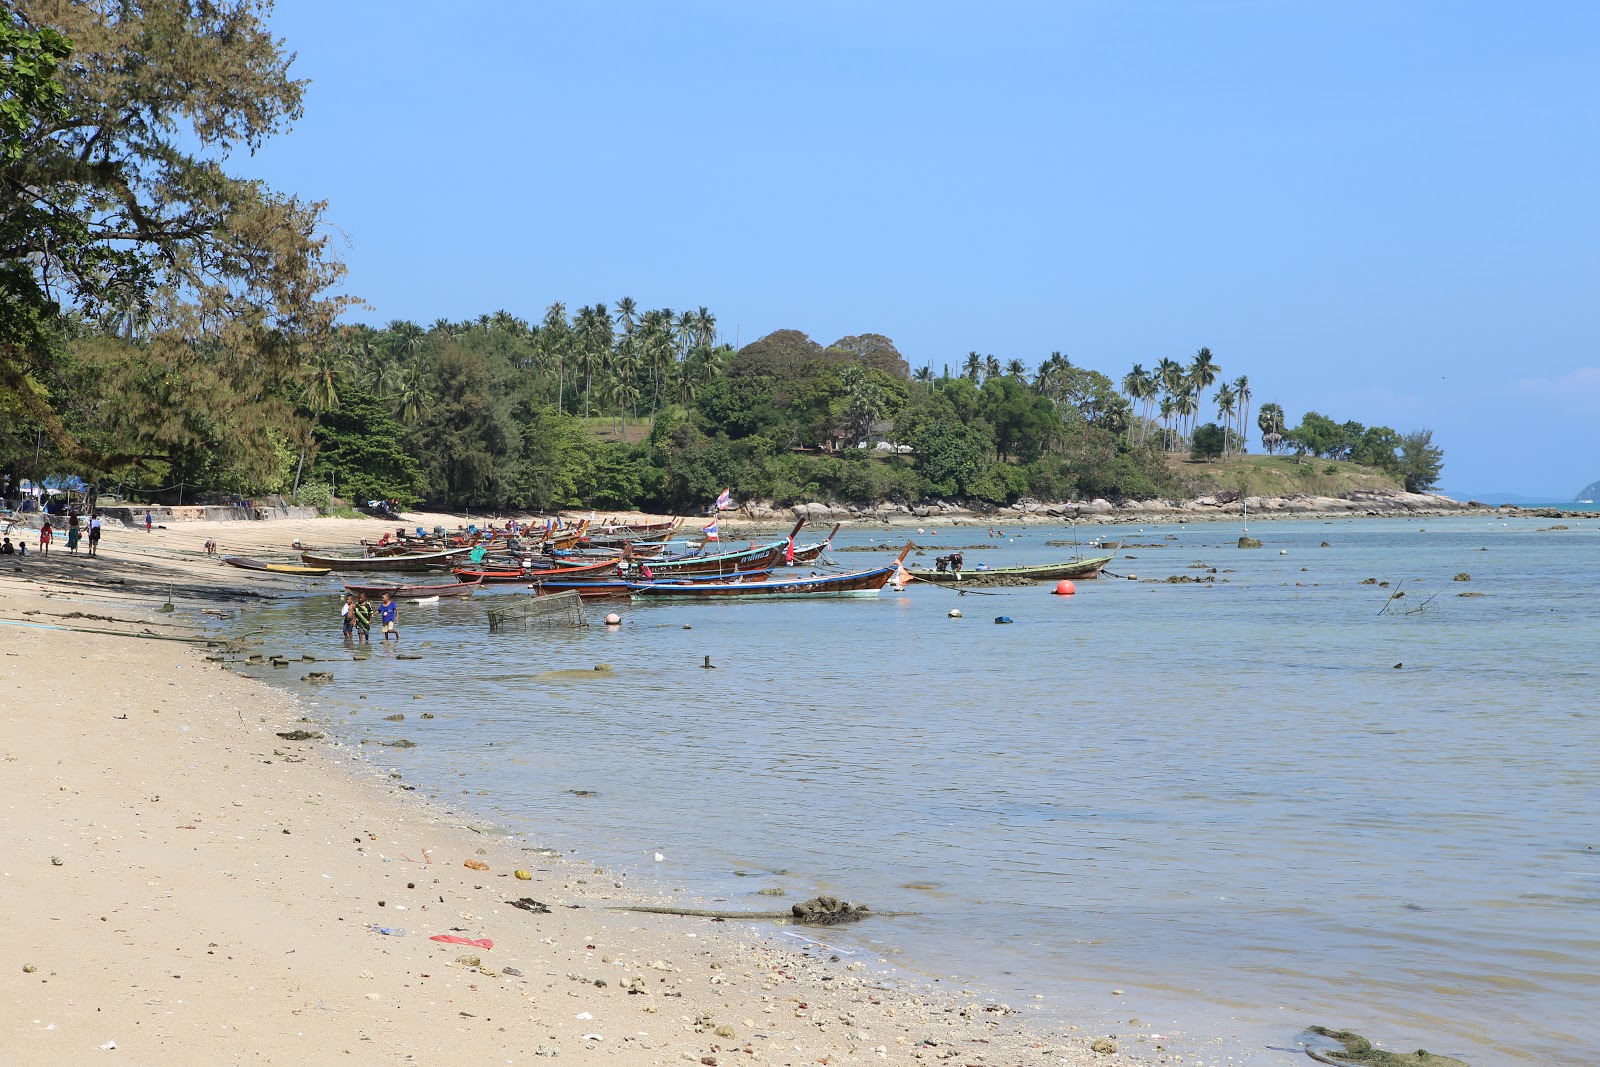 Fotografie cu Rawai Beach cu nivelul de curățenie in medie